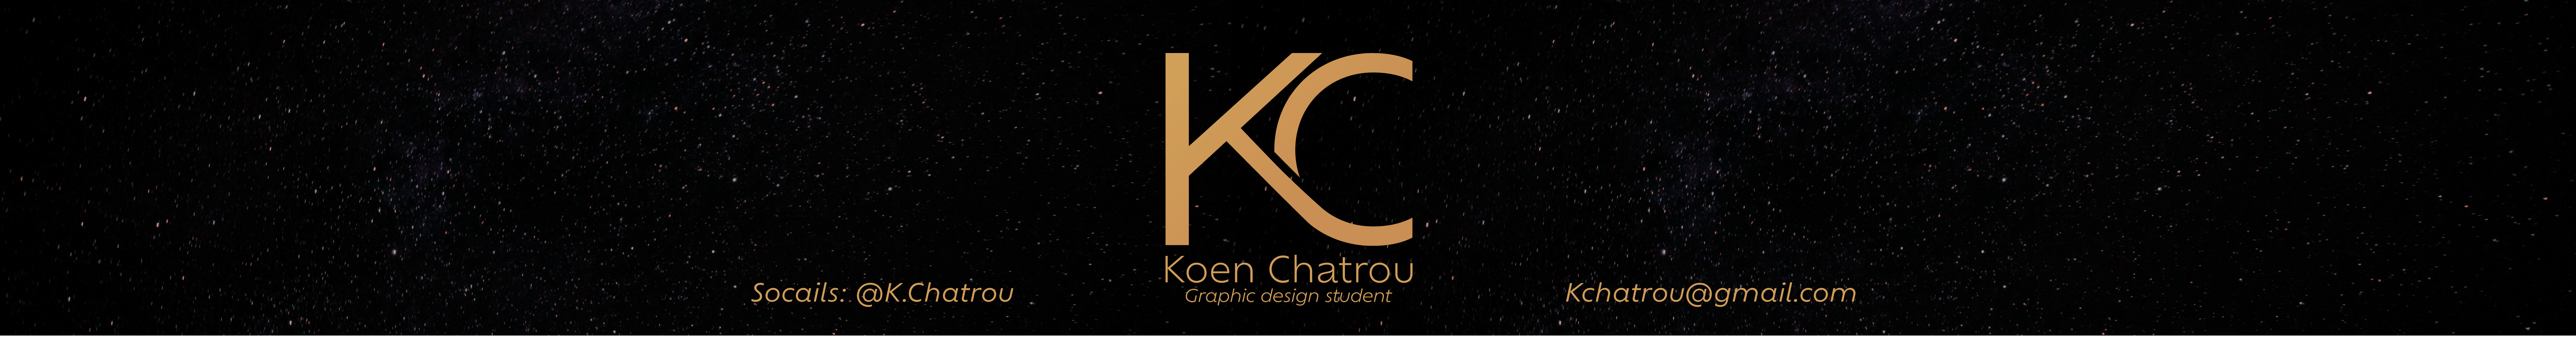 Koen Chatrou's profile banner